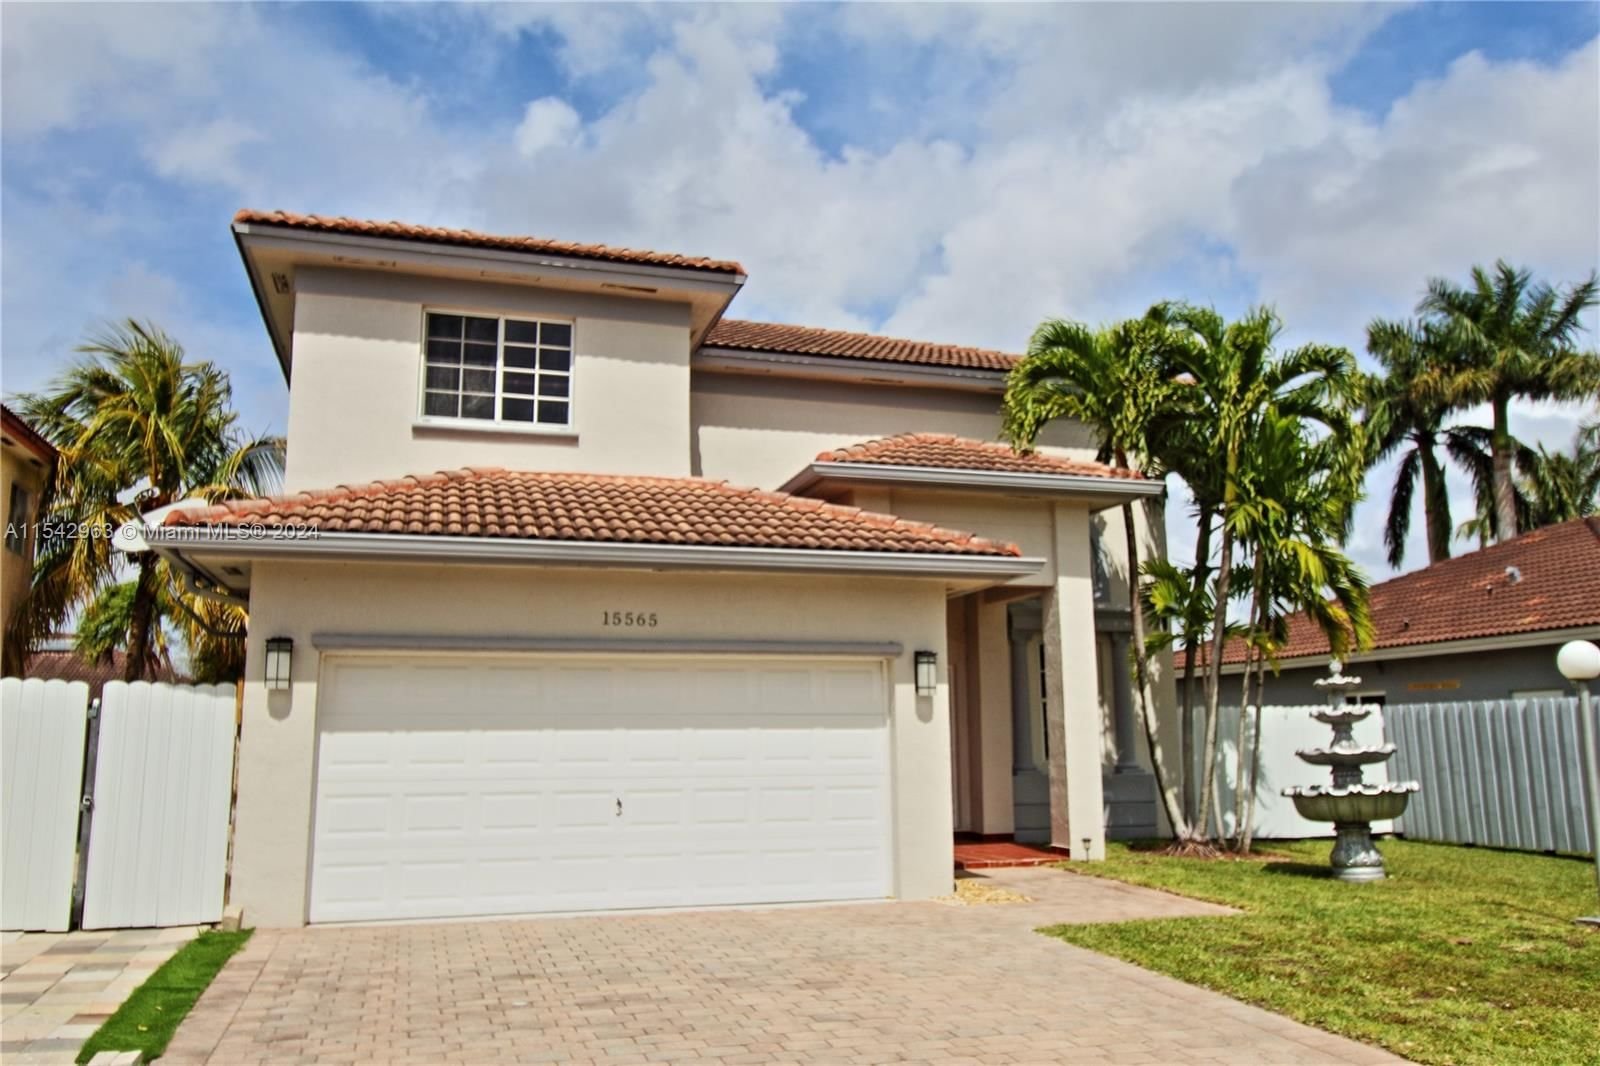 Real estate property located at 15565 10th Ln, Miami-Dade County, EFM ESTATES SEC 1, Miami, FL